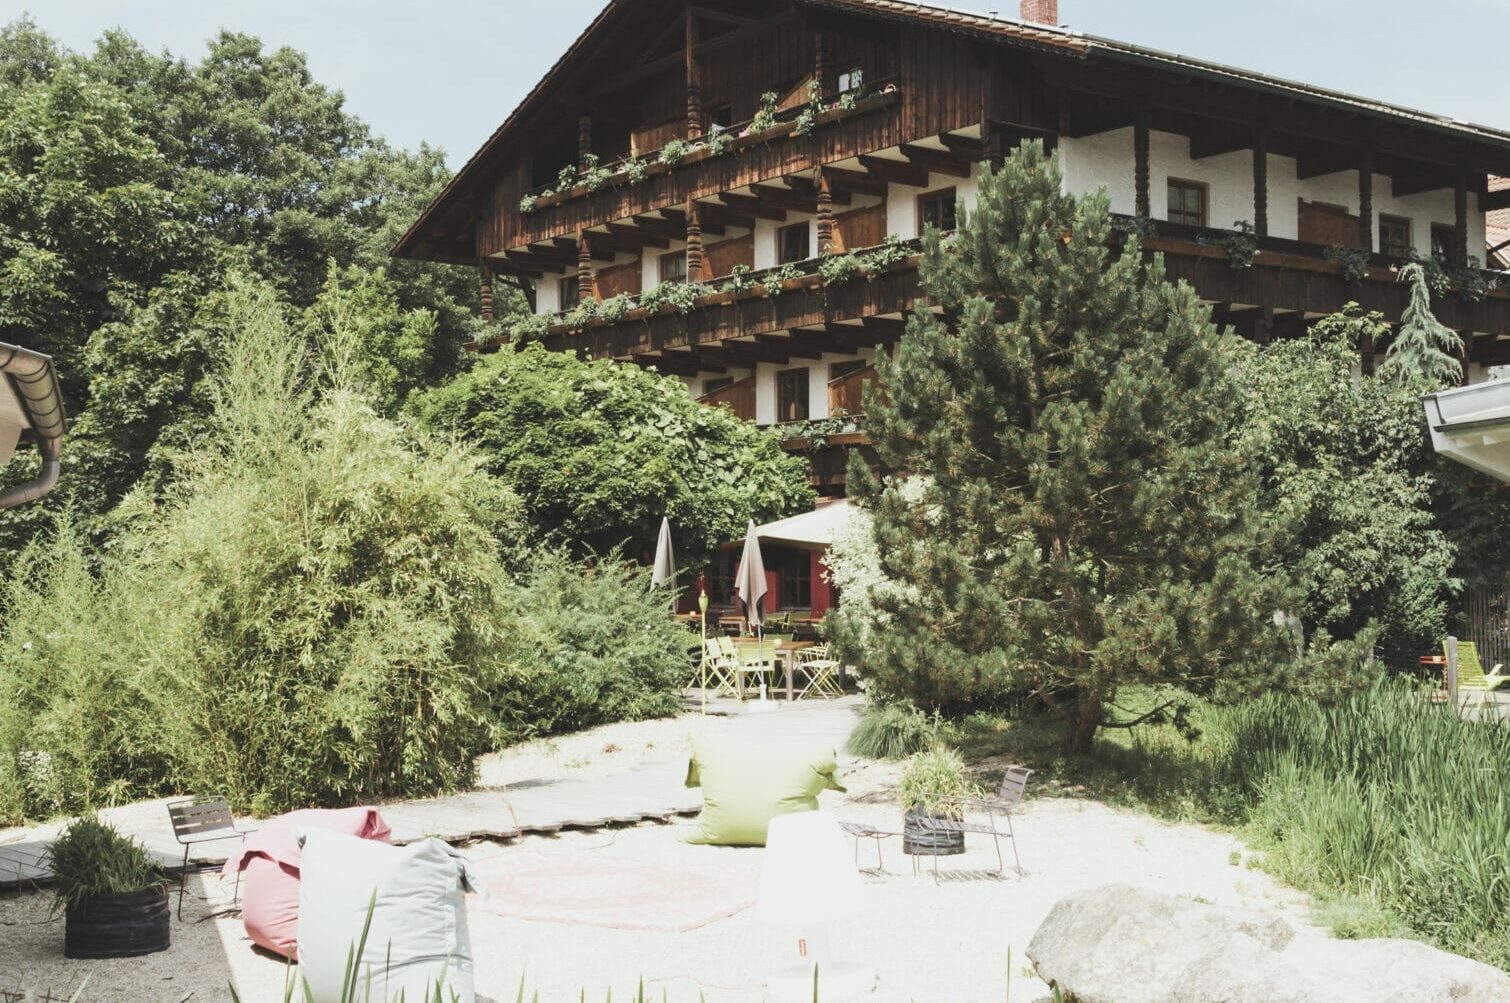 Adventure Camp Schnitzmühle in Viechtach